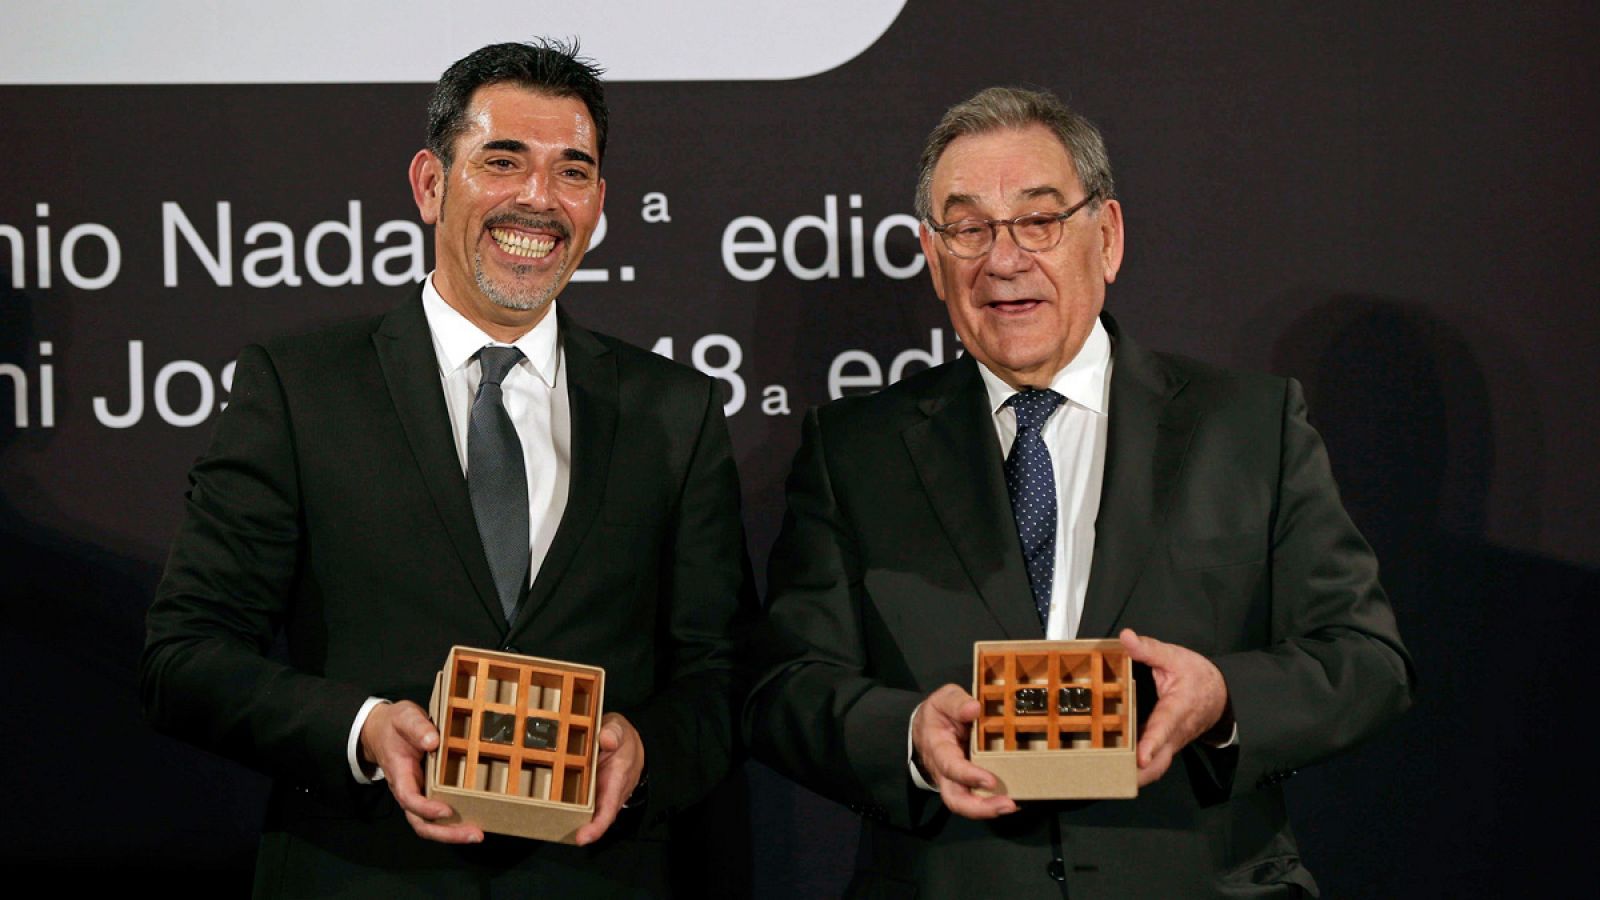 Los ganadores de los premios Nadal y Josep Pla en sus ediciones de 2016, el escritor barcelonés Víctor del Árbol (izquierda), y el periodista catalán Lluís Foix (derecha)